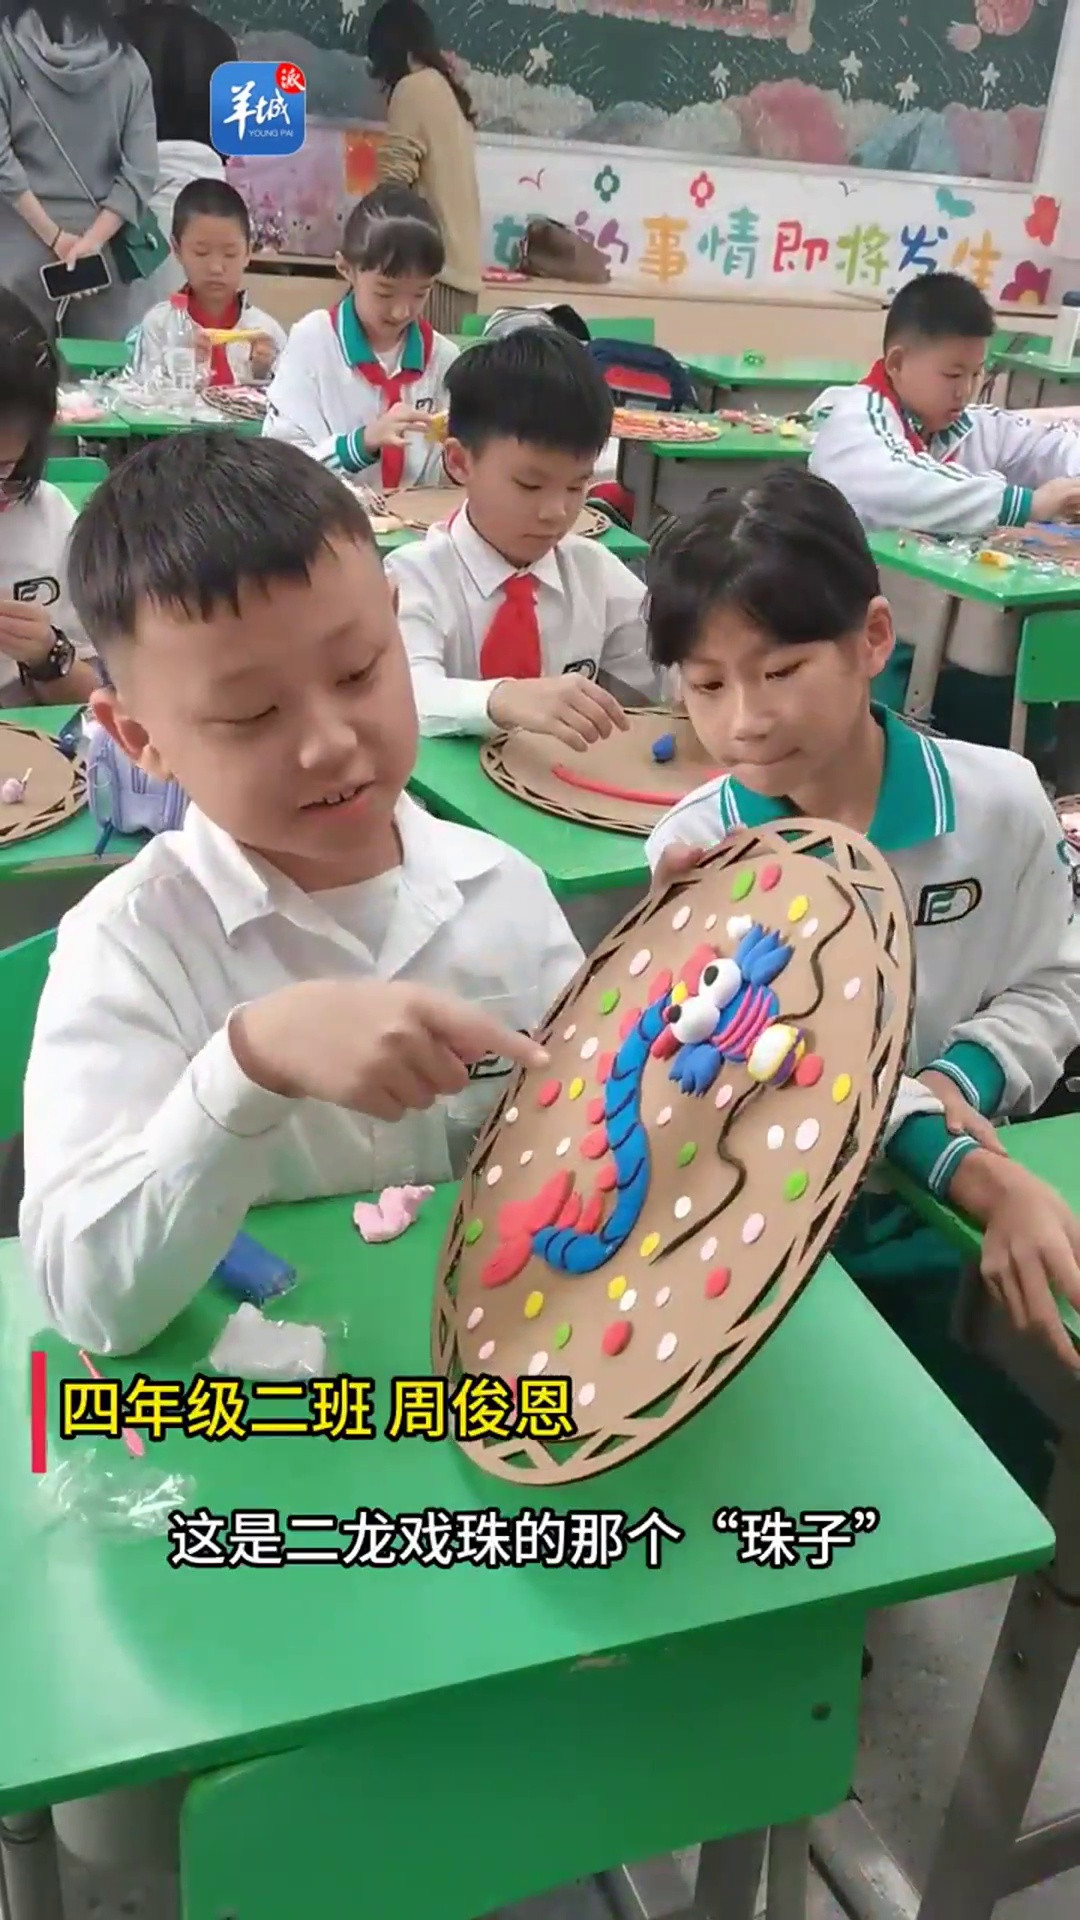 [视频]如何玩转假前教育周? 东风东路小学“家”文化主题活动吸睛